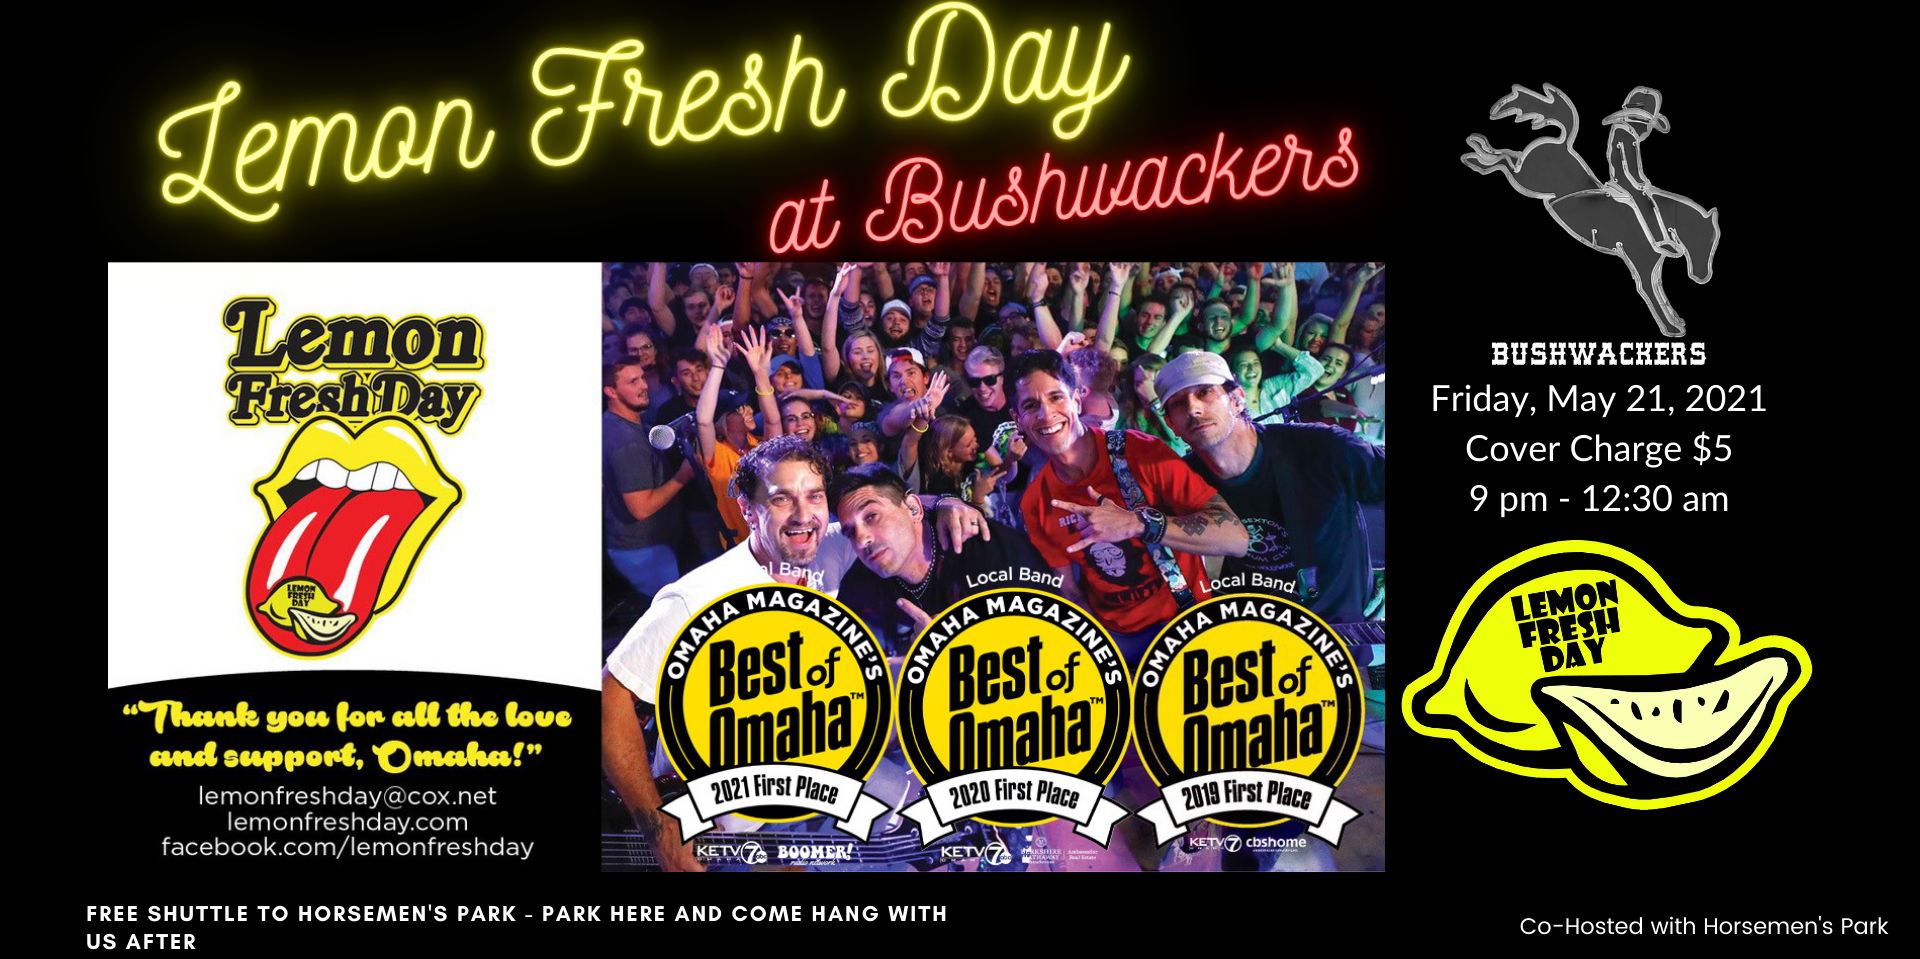 Lemon Fresh Day at Bushwackers! promotional image